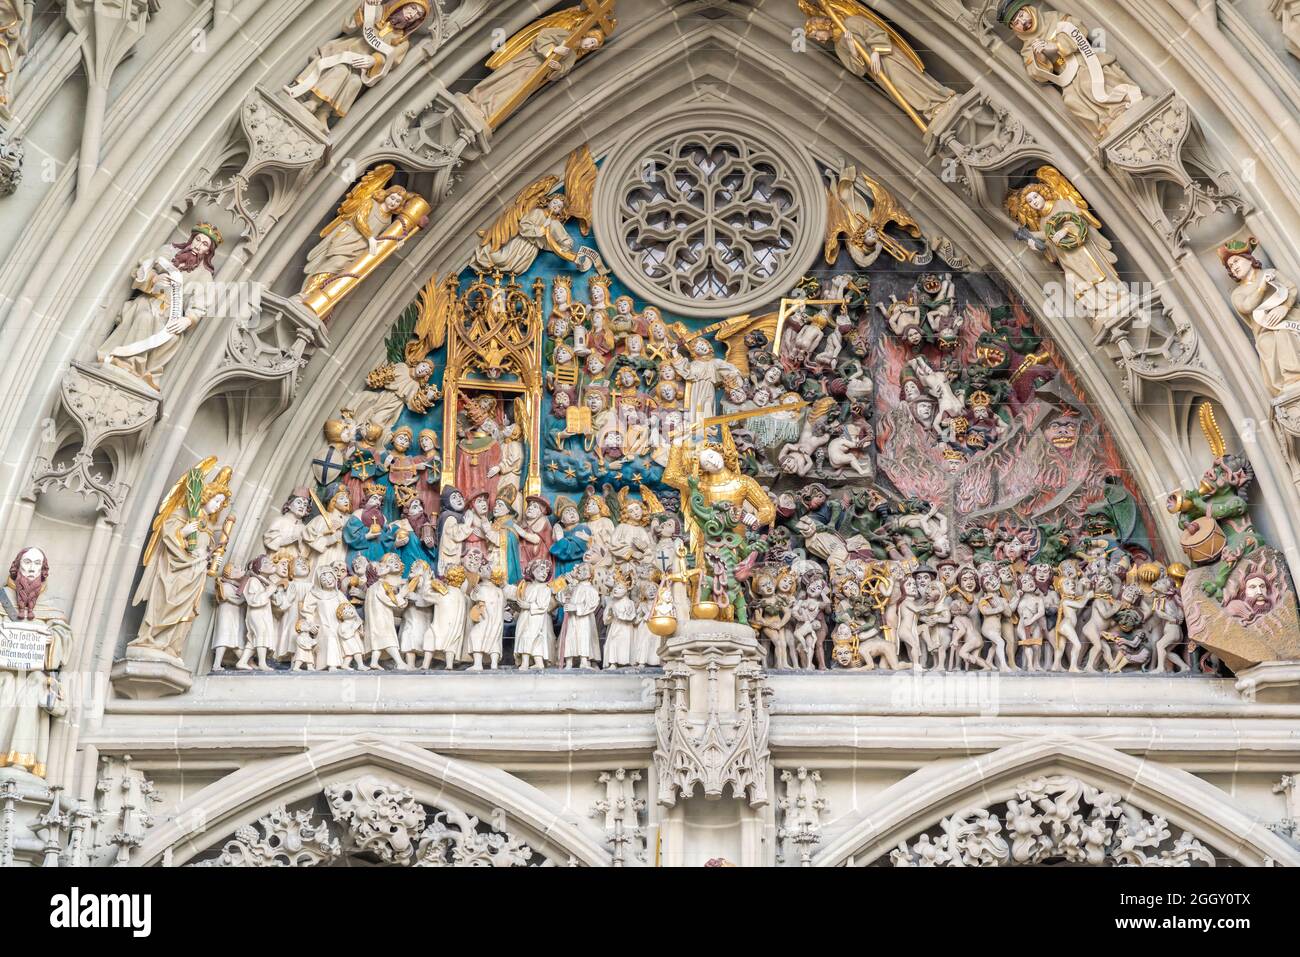 Dettaglio del Giudizio universale - scultura medievale all'ingresso della Cattedrale di Berna-Minster - Berna, Svizzera Foto Stock